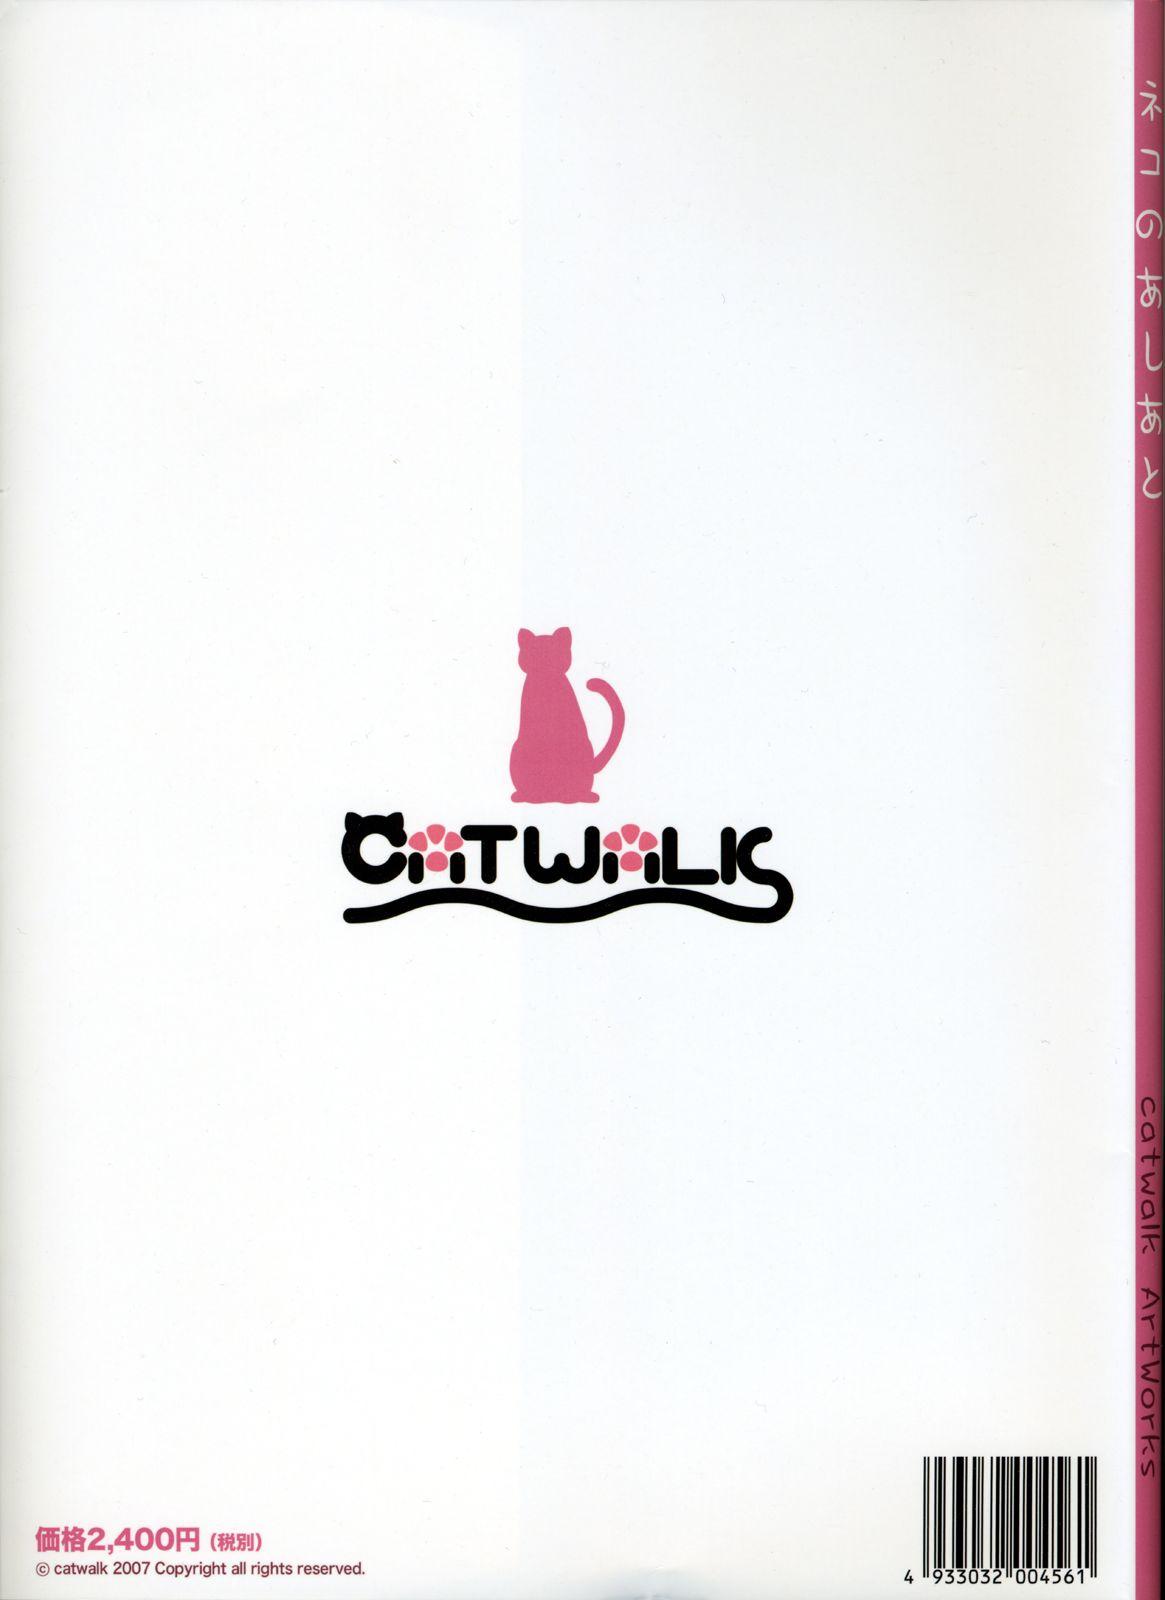 catwalk ArtWorks 1